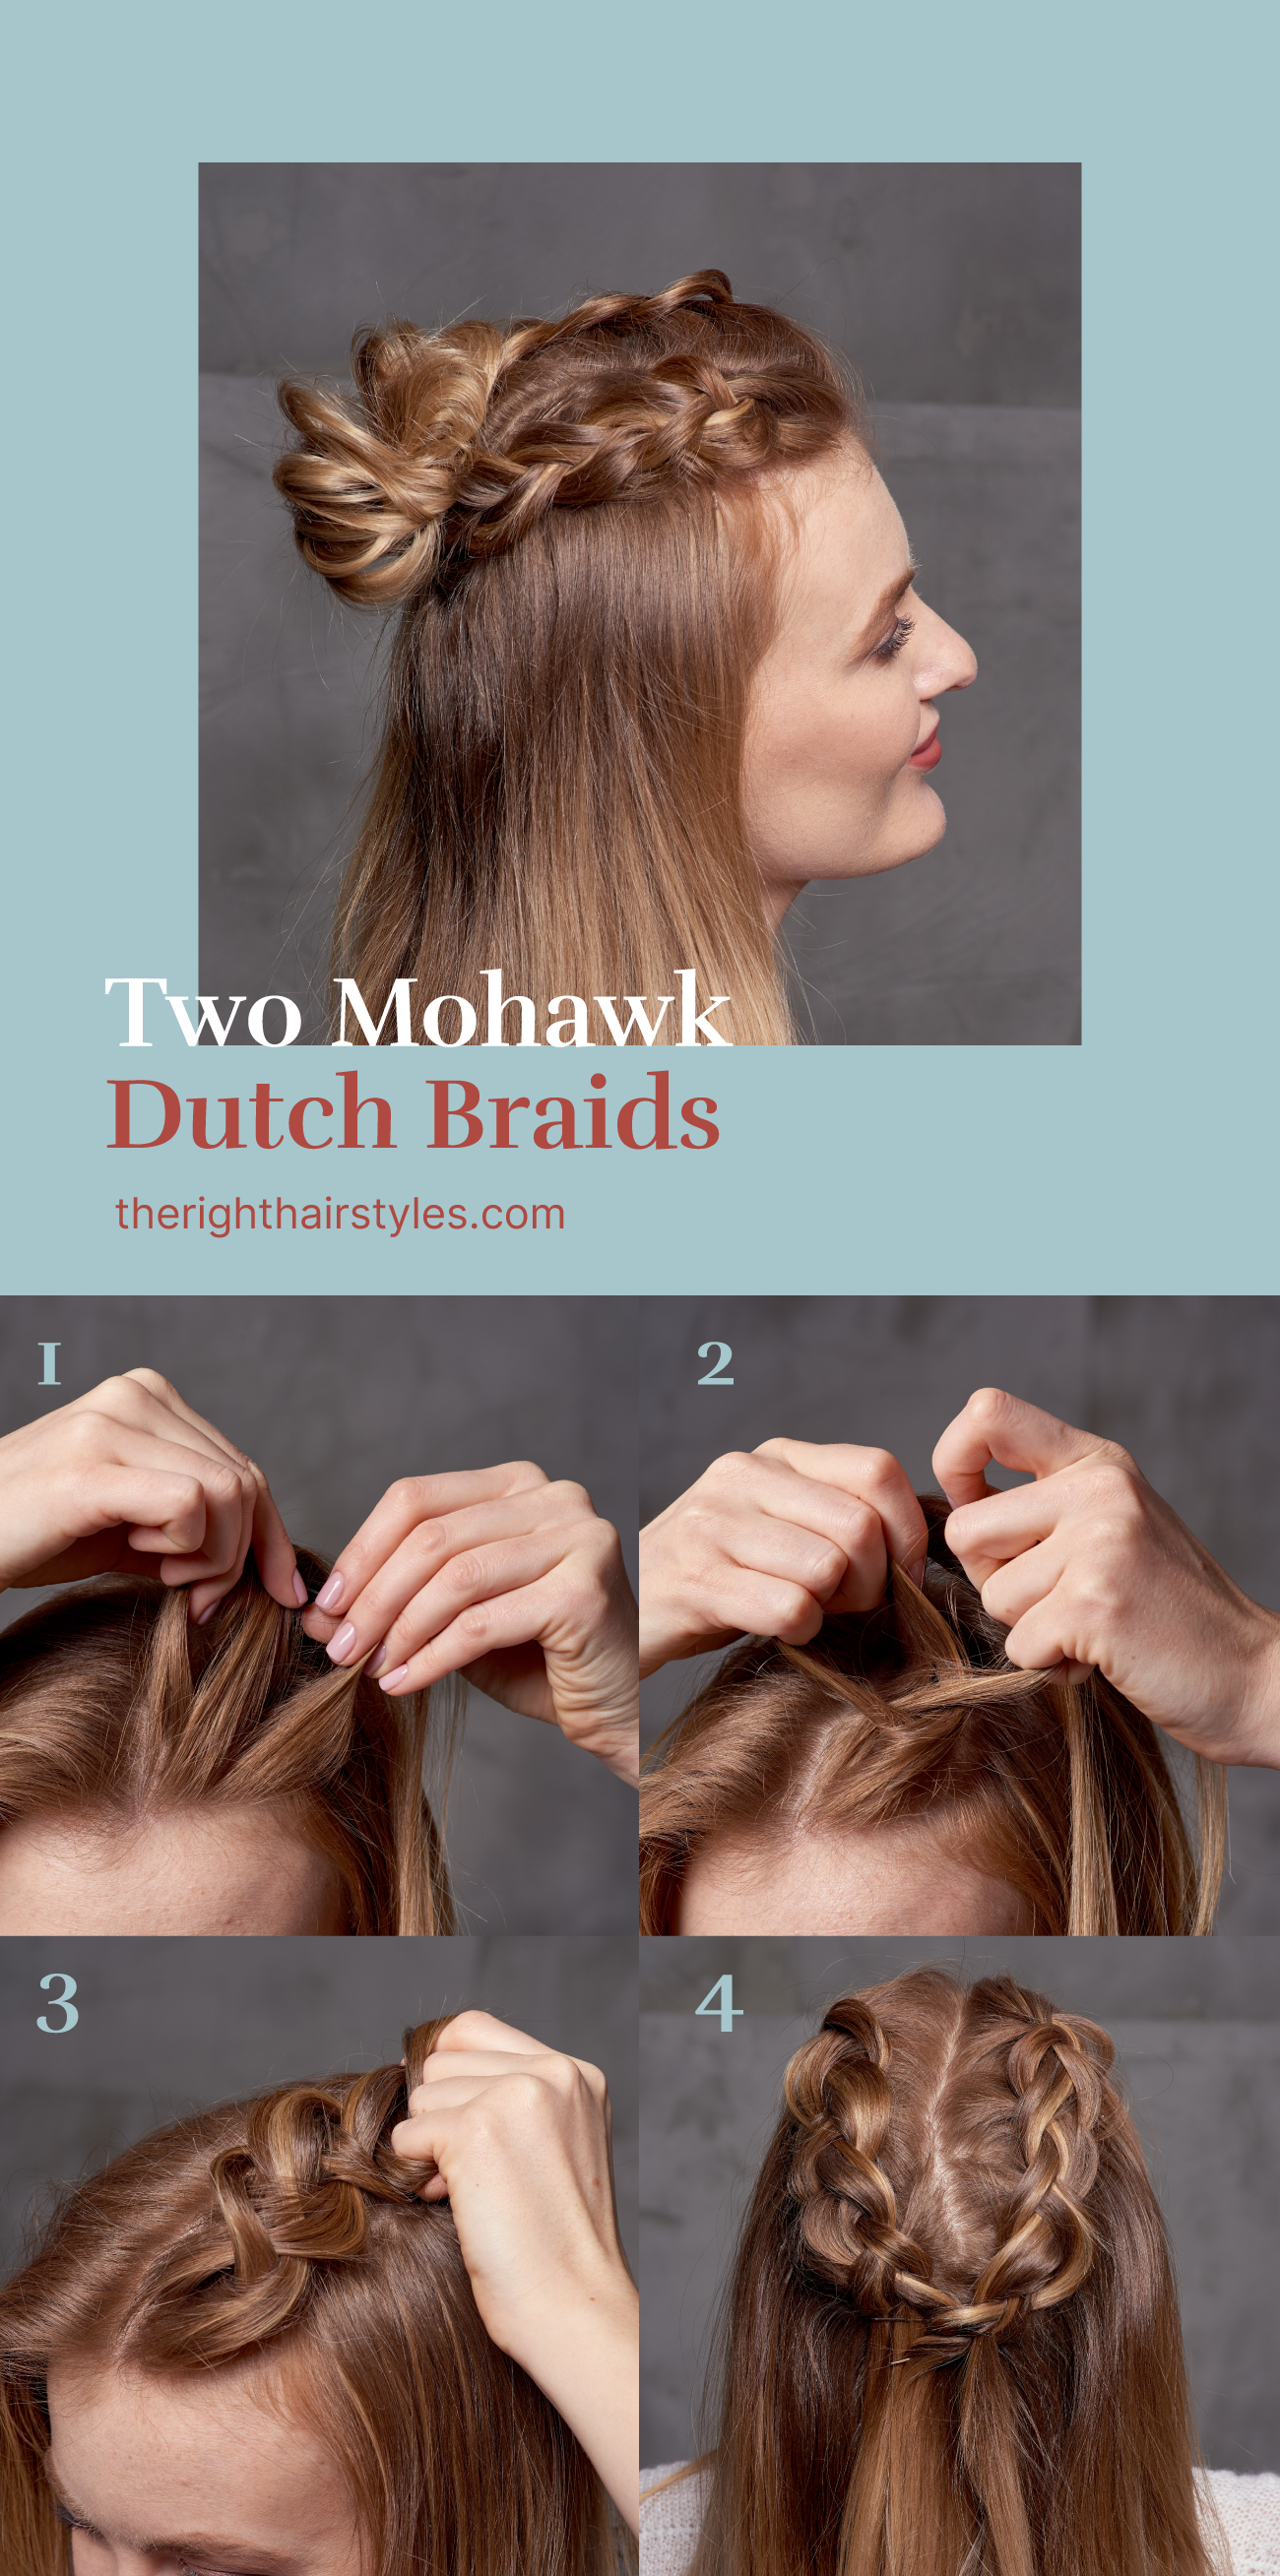 Mohawk Dutch Braids into a Bun Hairstyle Tutorial